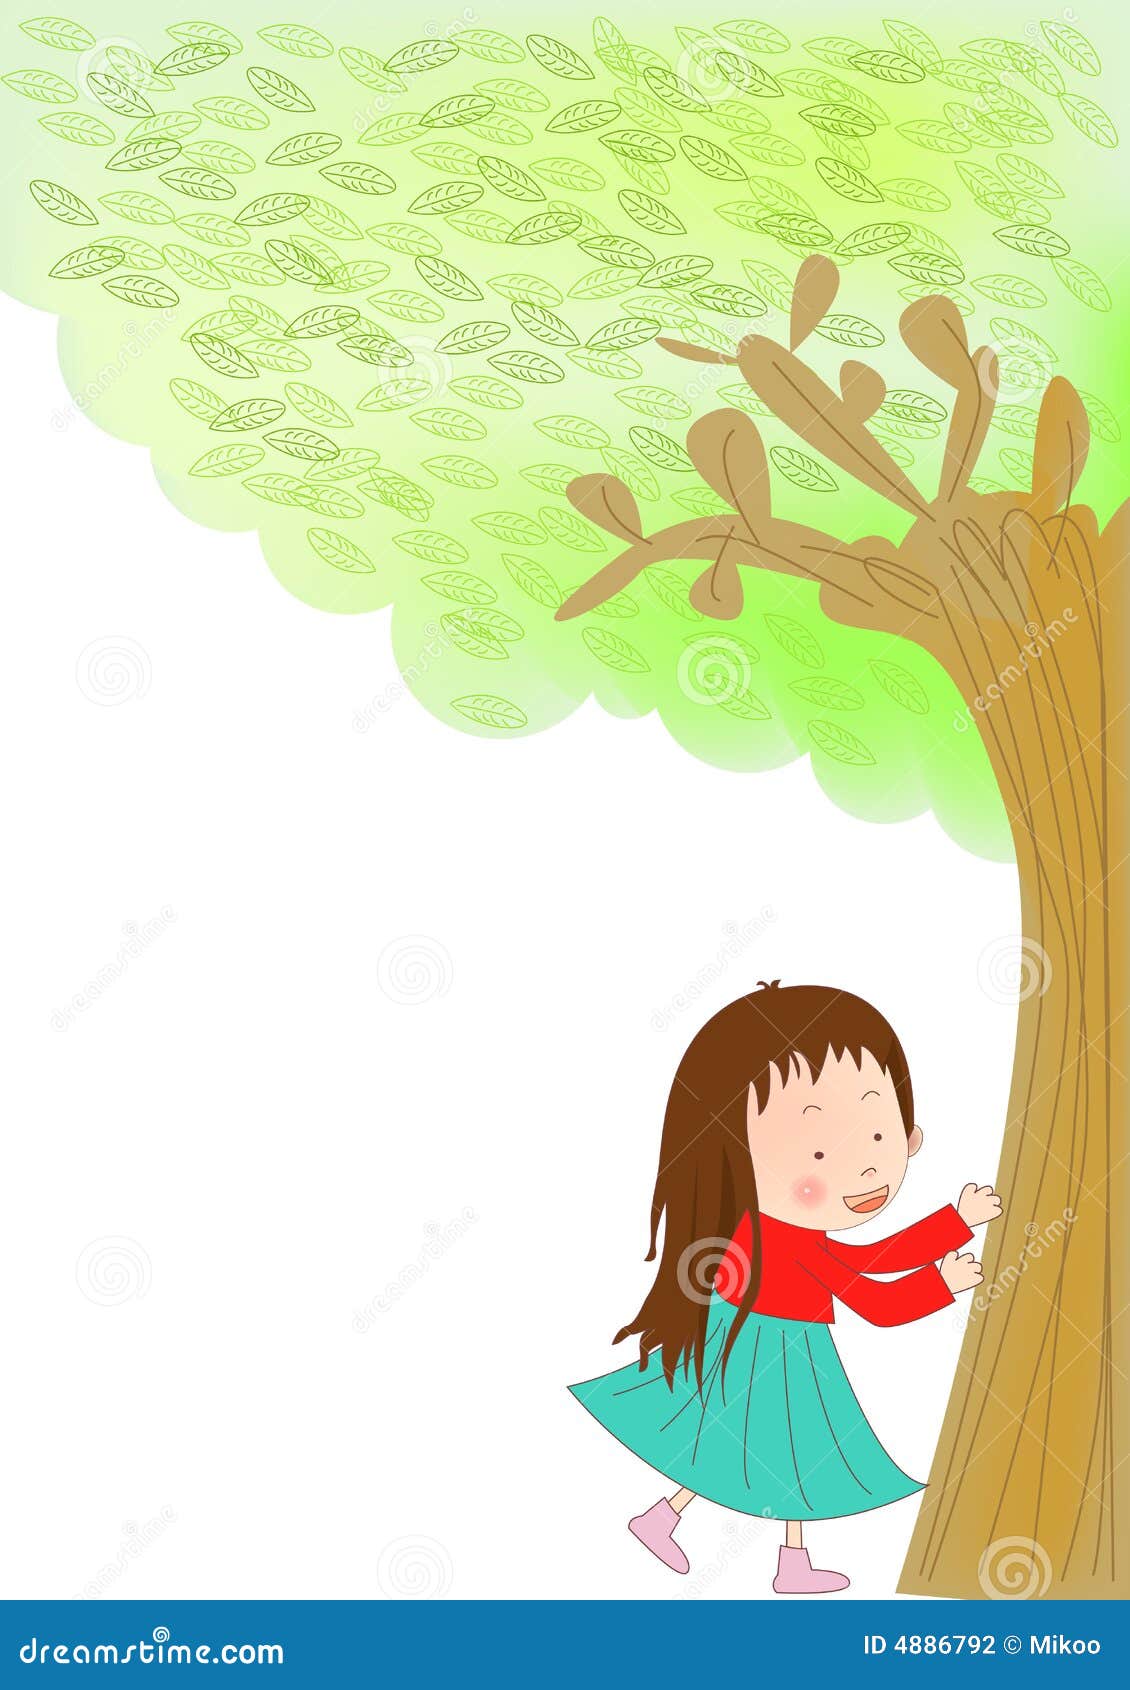 Can you climb a tree. Девочка лезет на дерево рисунок. Рисунок карабкаться на дерево. Нарисовать девочка лезет на дерево". Человек лезет на дерево вектор.